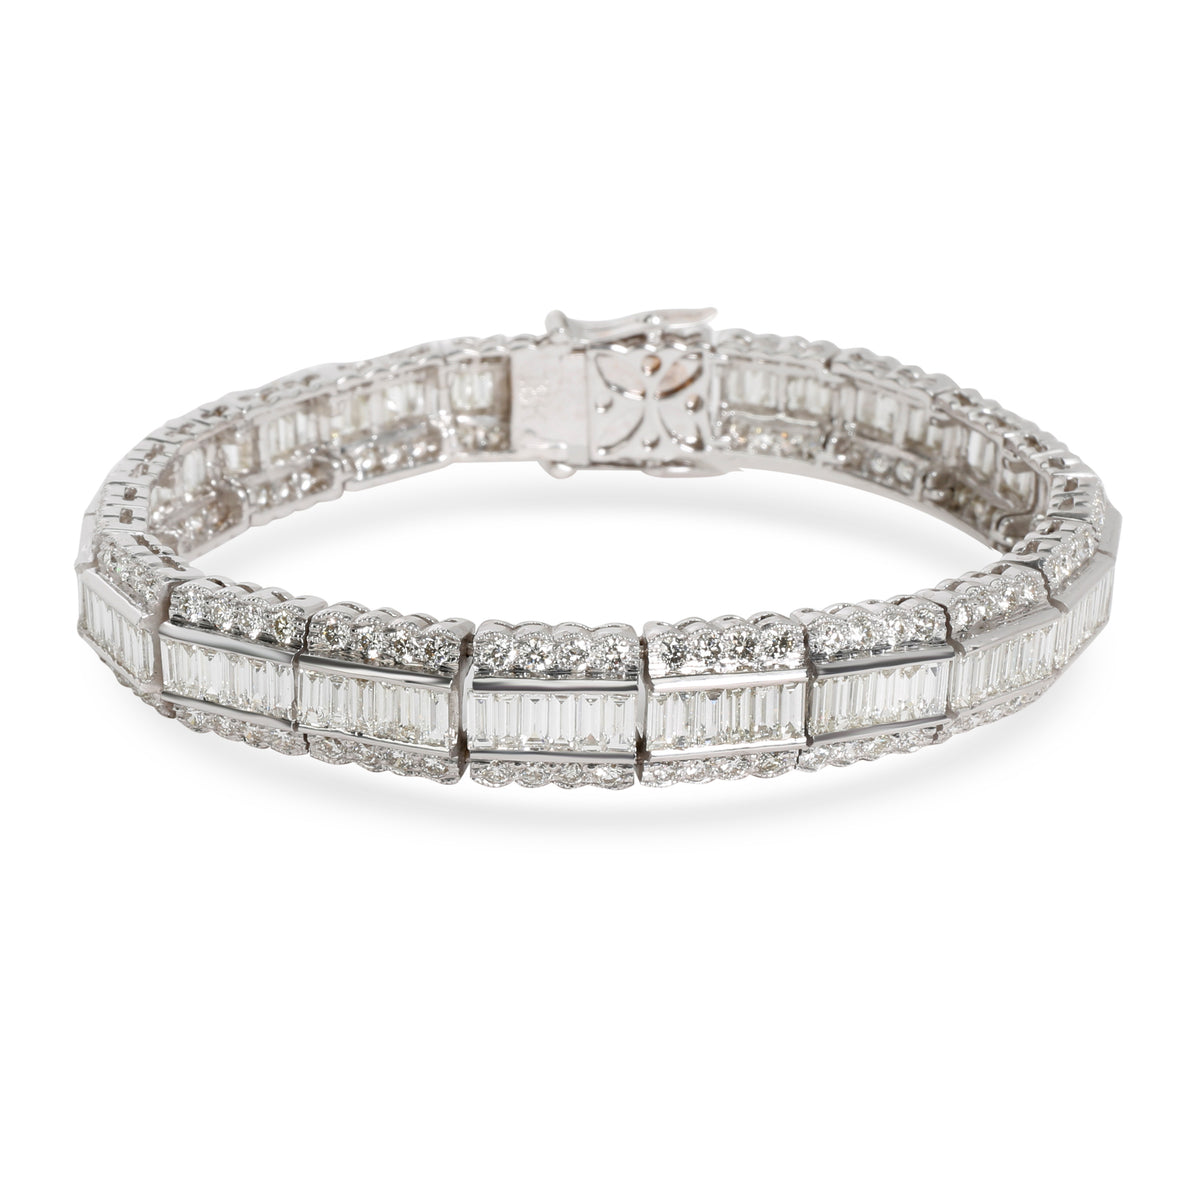 Baguette & Round Diamond Lace-Edged Bracelet 18K White Gold 7.92 ctw